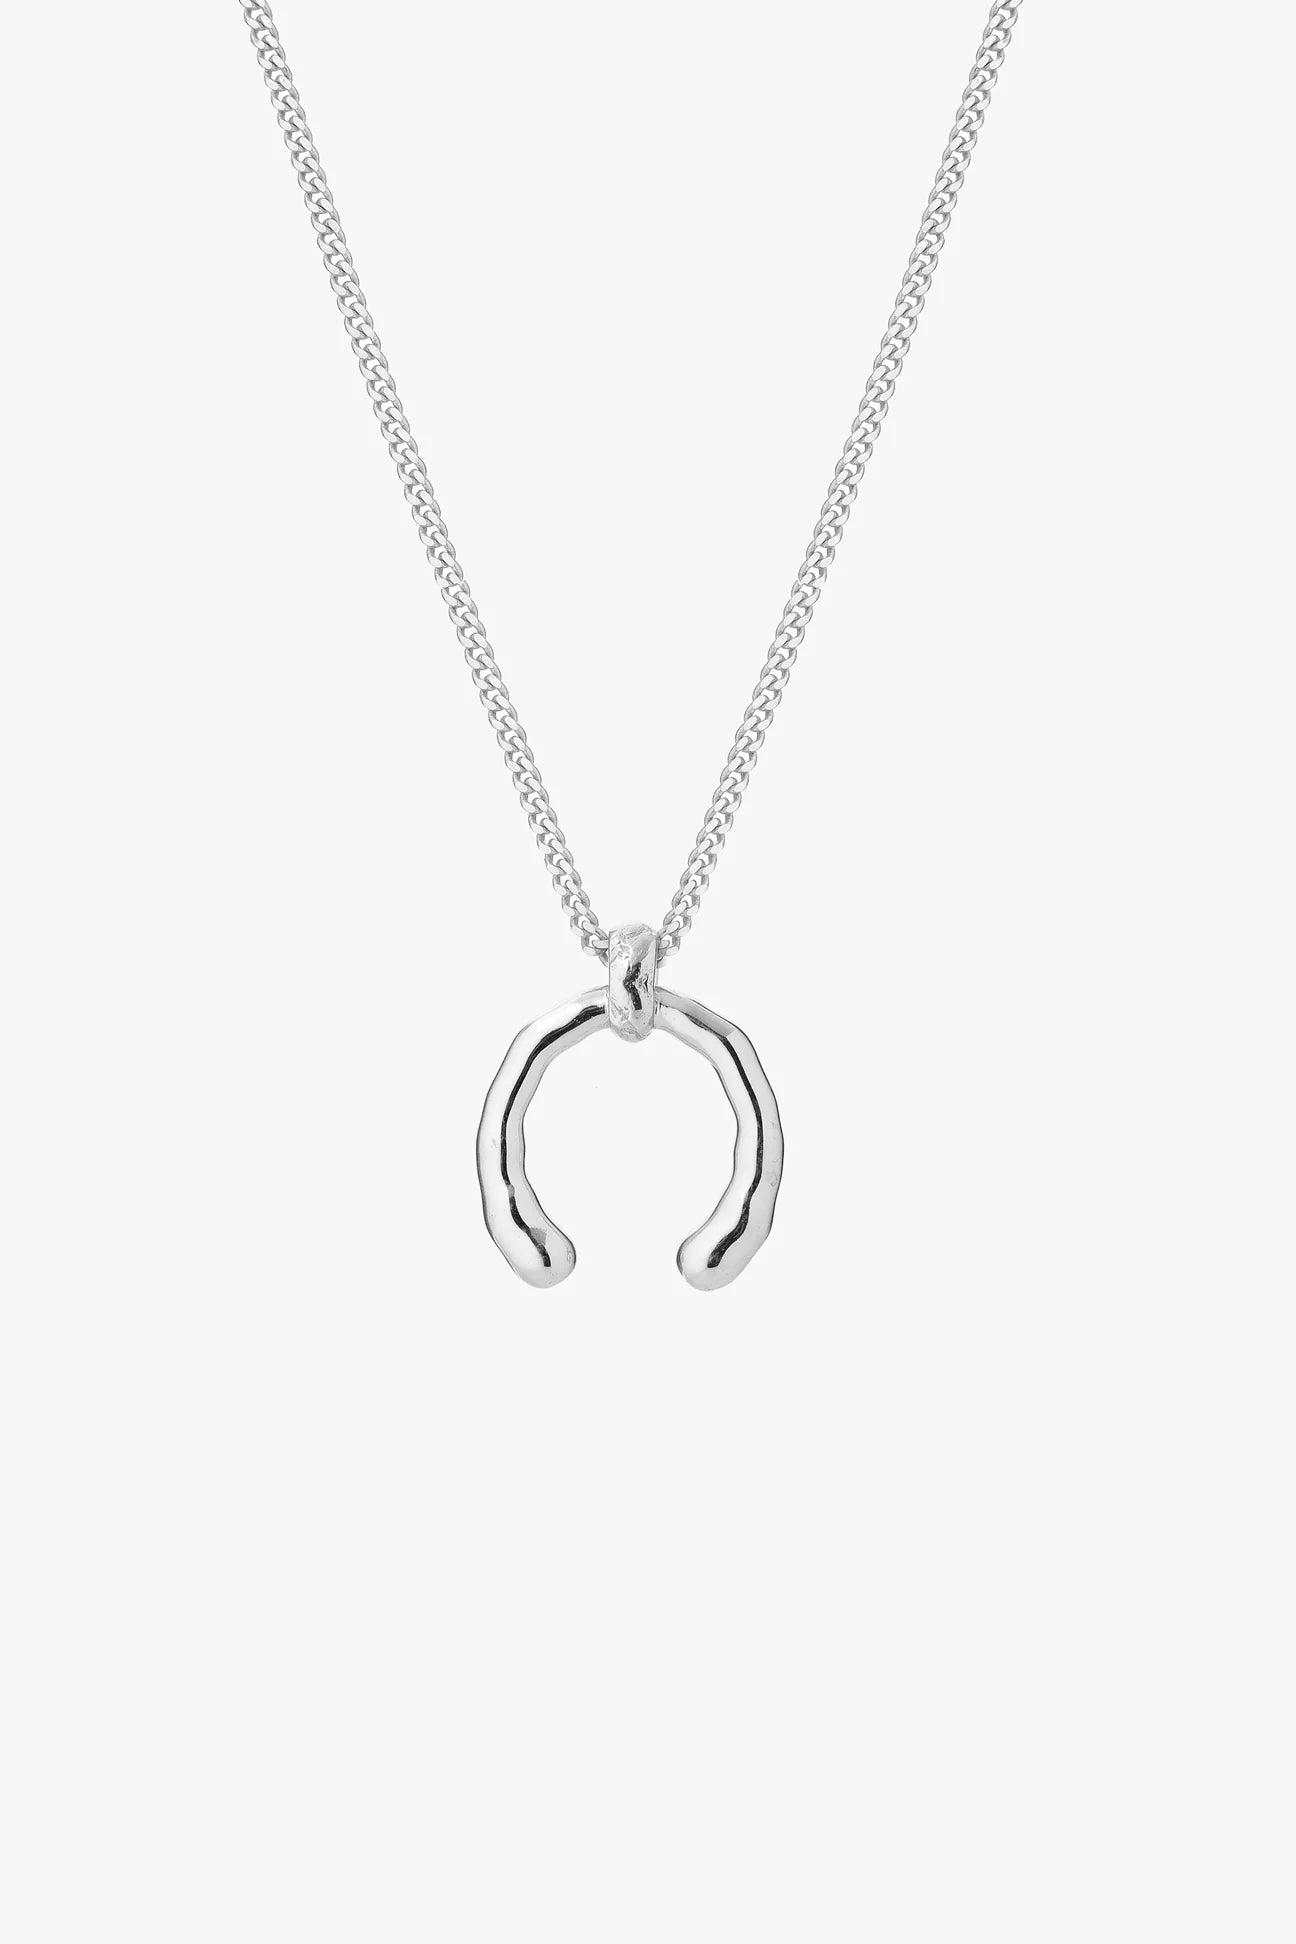 Tutti & Co Dew Necklace - Silver